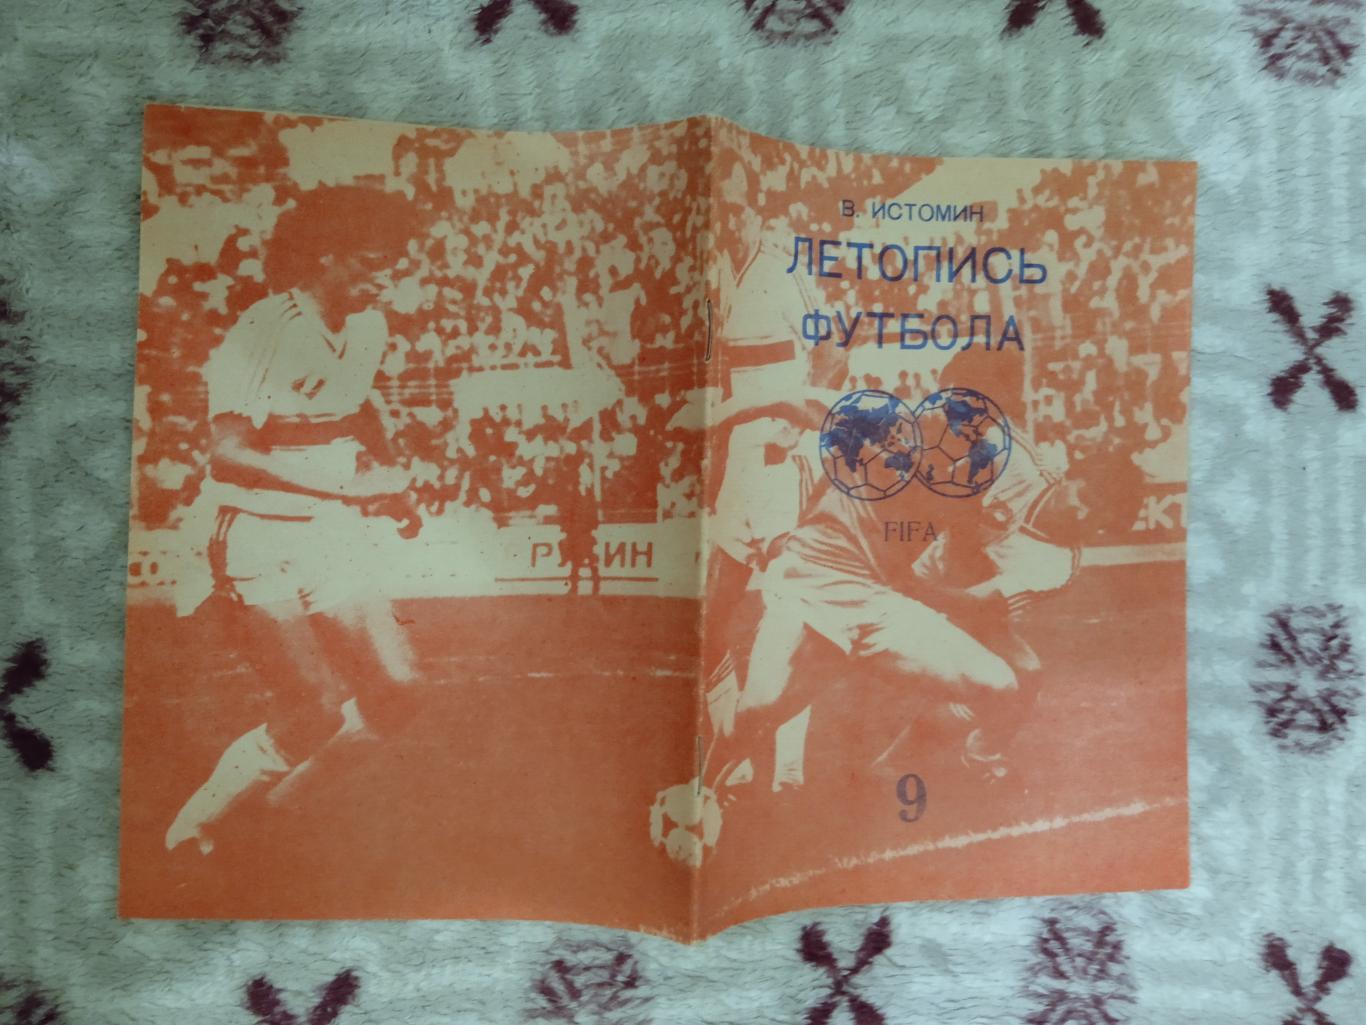 В.Истомин.Летопись футбола.Часть 9 (1972-1976).Москва 1994 г.